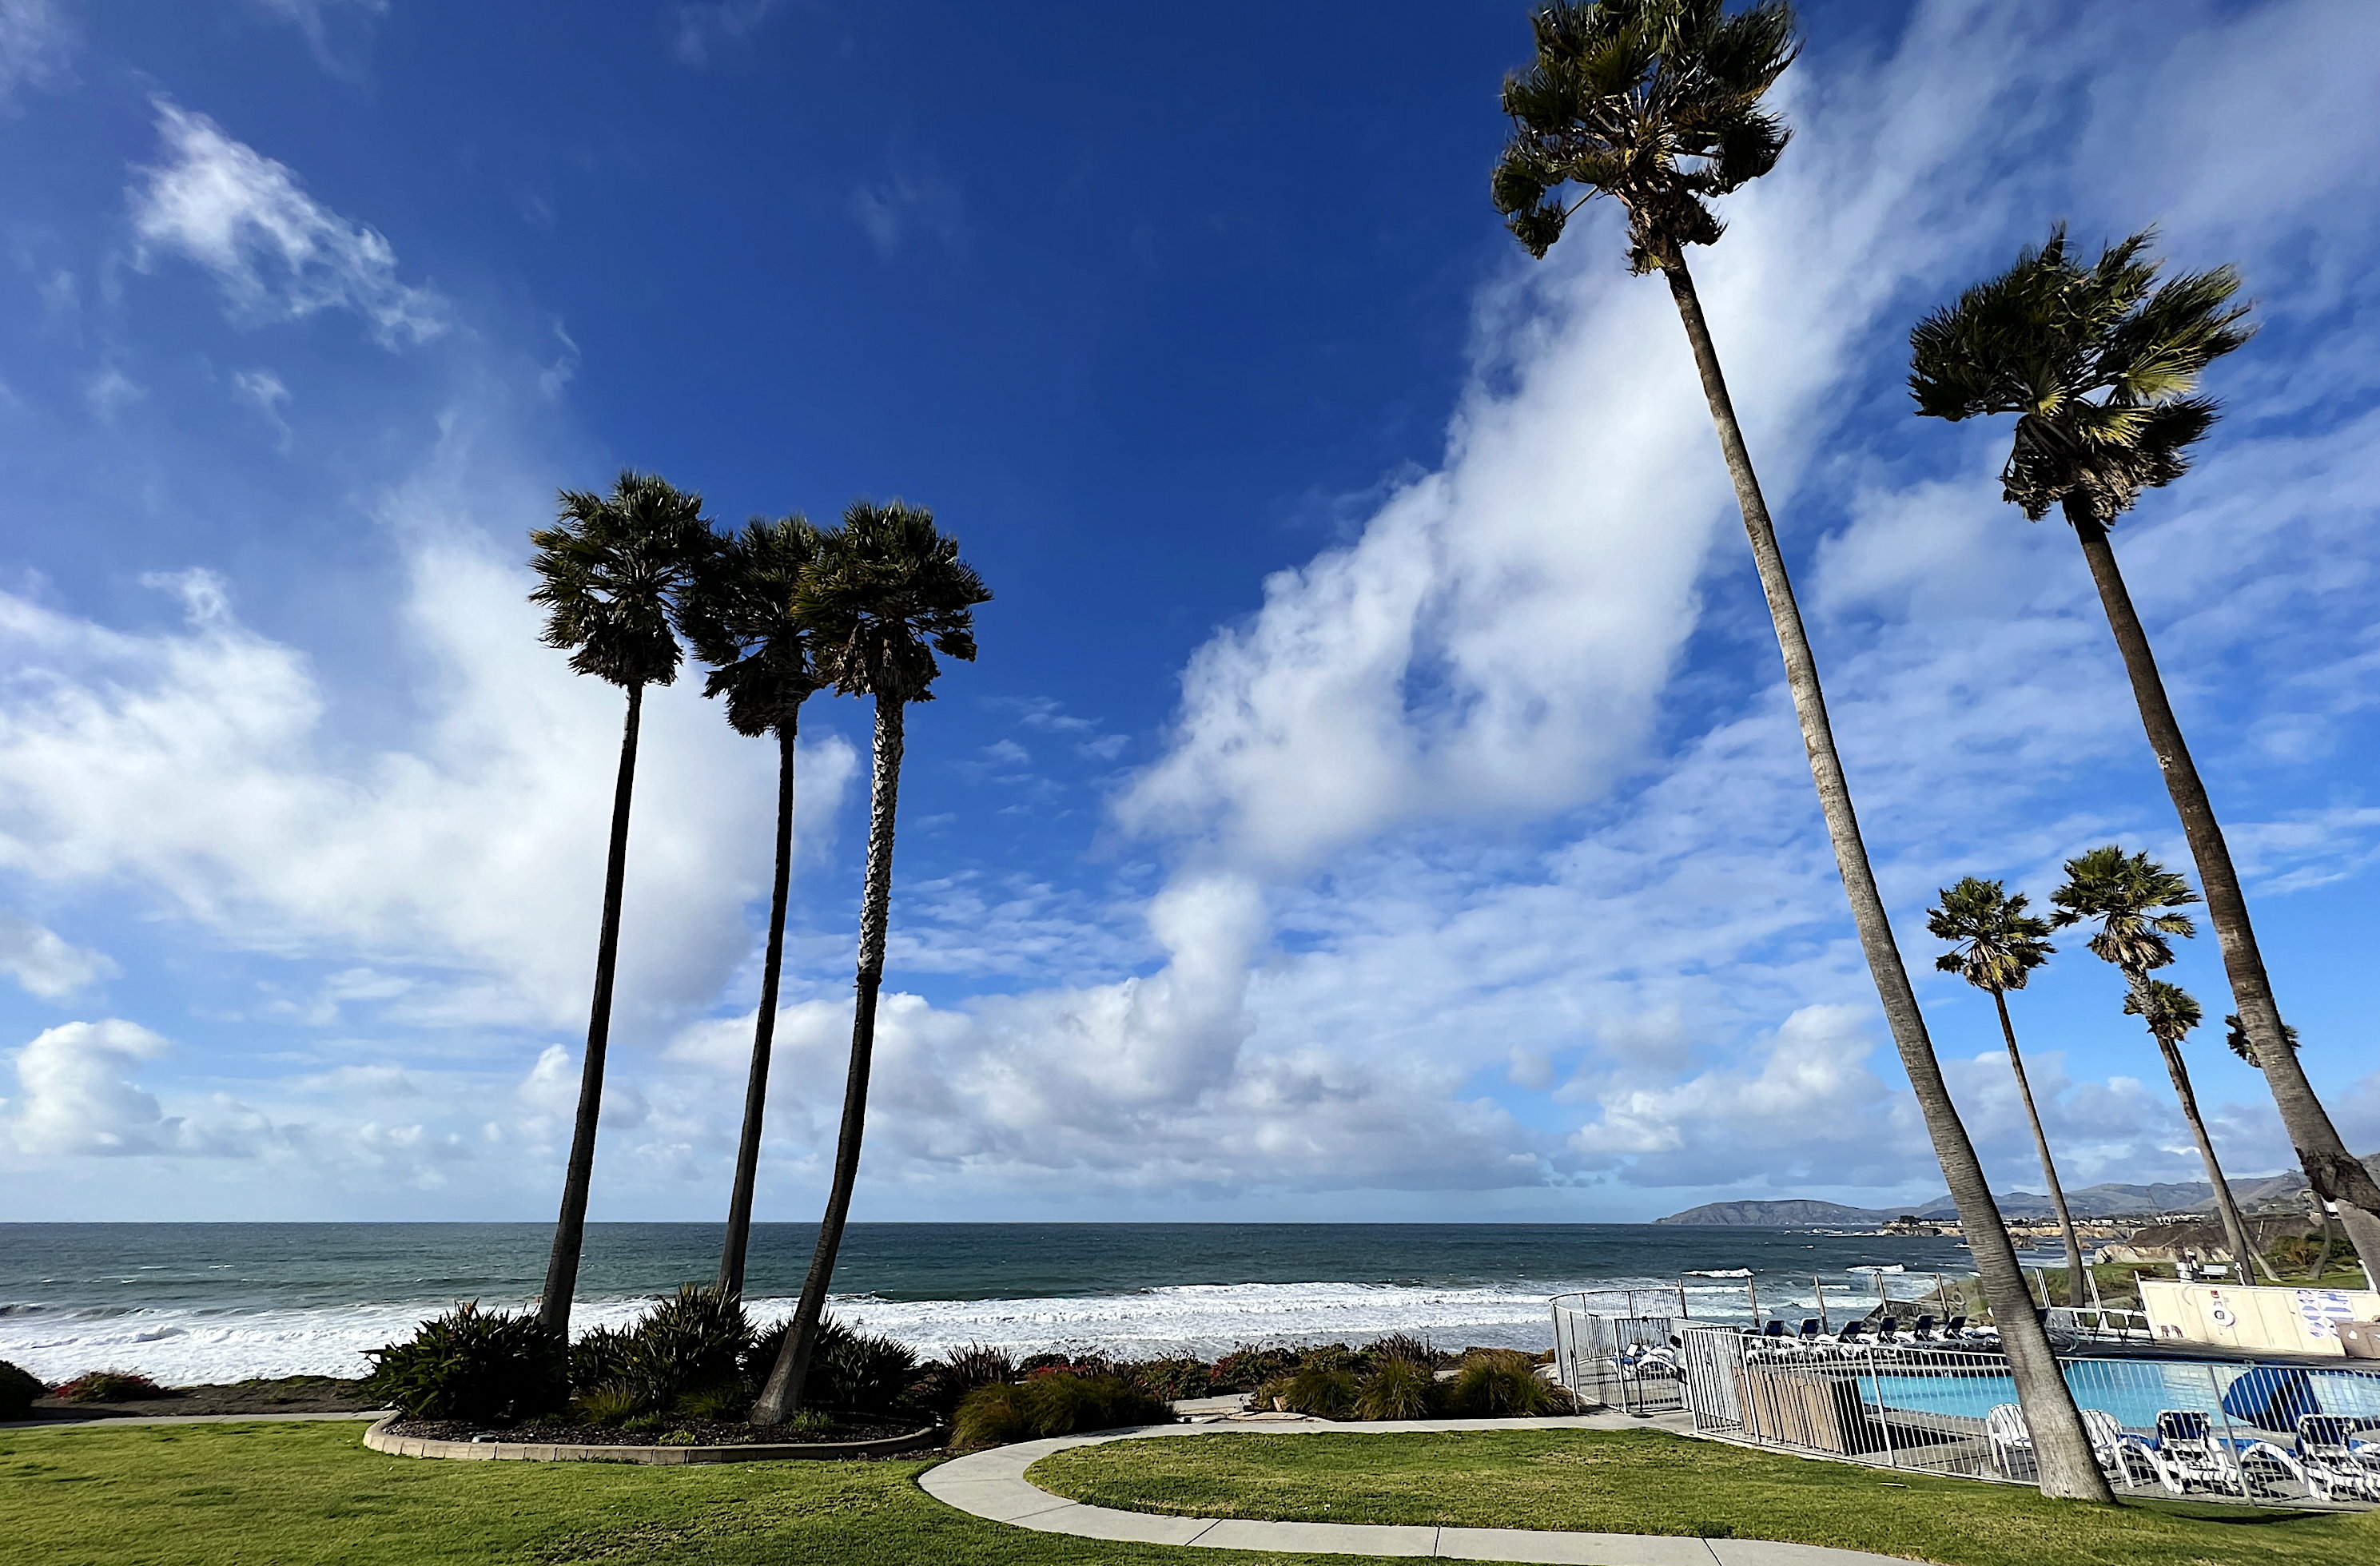 Blick vom Balkon des Hotels auf den Pazifik und Richtung Nordwesten. Blauer Himmel mit weissen Wolken, immer noch windig. Im Vordergrund die Palmen und der Pool.